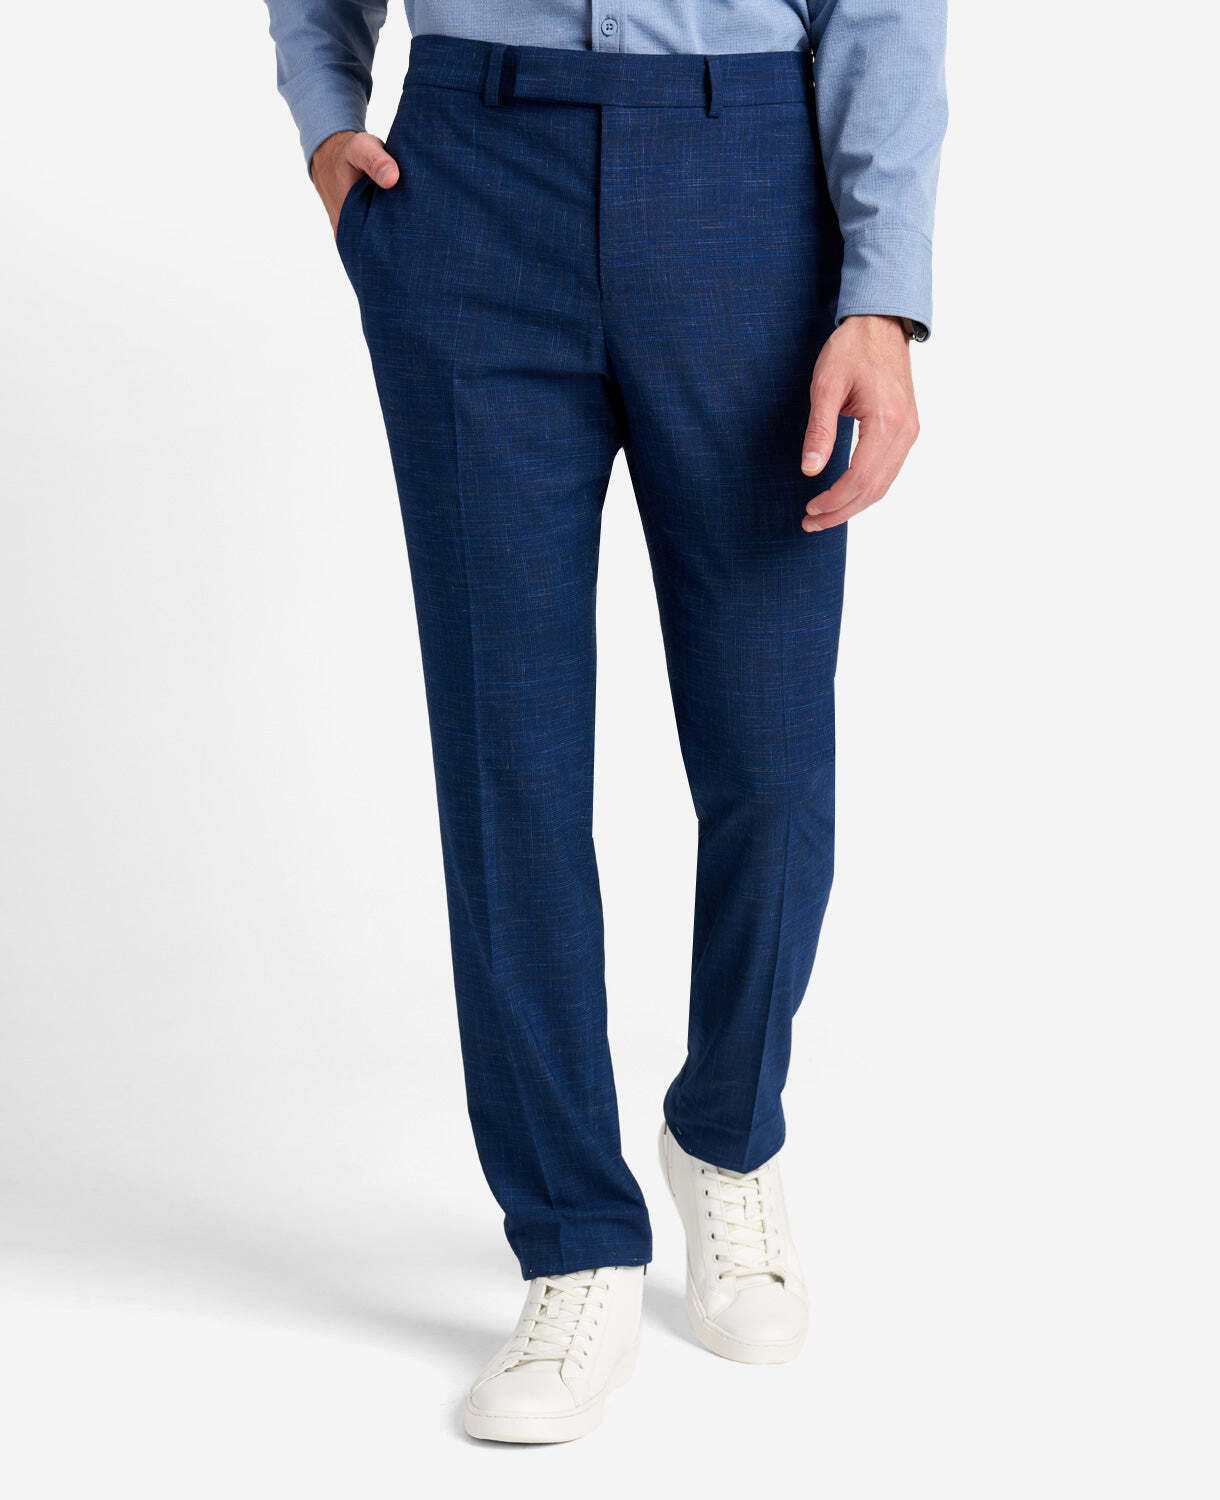 Kenneth Cole Mens Suit Dress Pants 42 x 32 Royal Blue Flex Slim-Fit Stretch